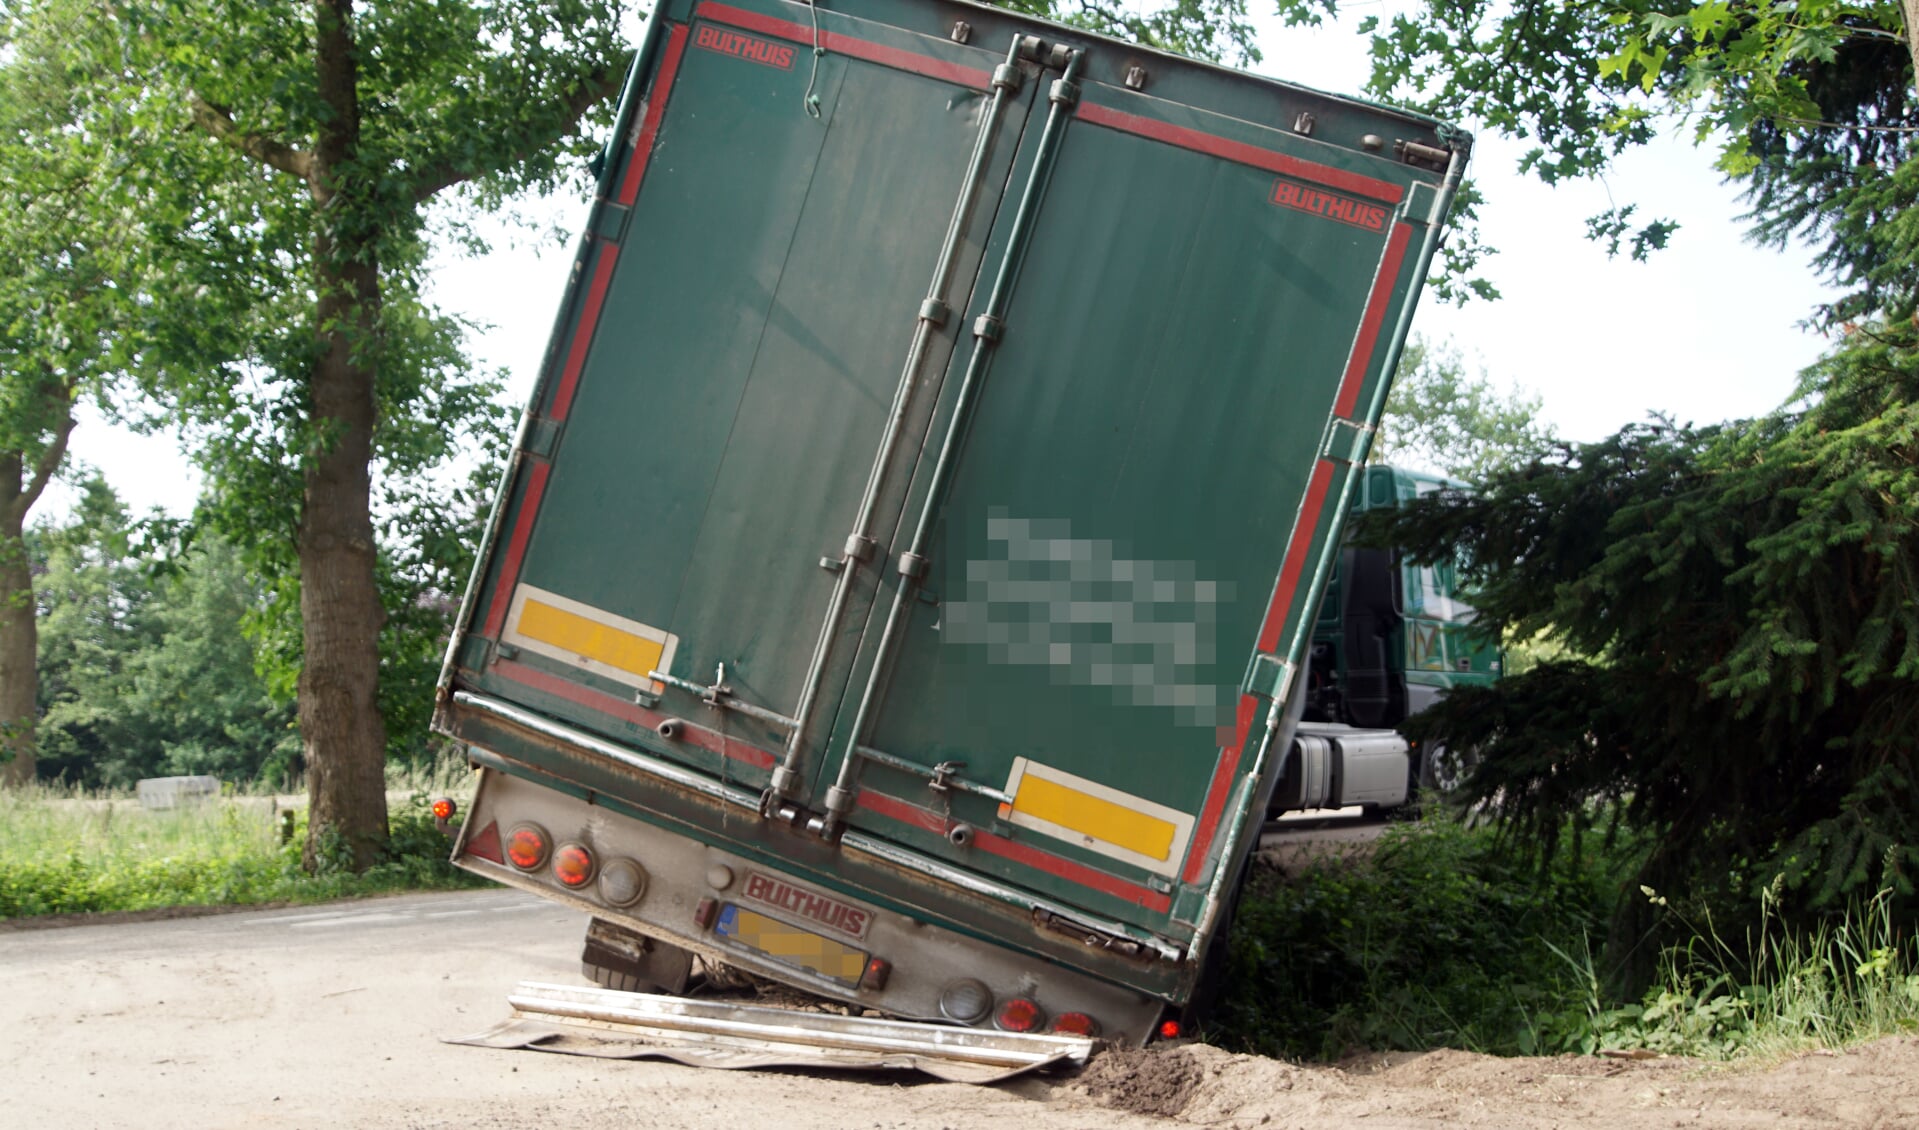 De oplegger van de vrachtwagen kwam vast te zitten in de berm en de sloot. Foto: GinoPress